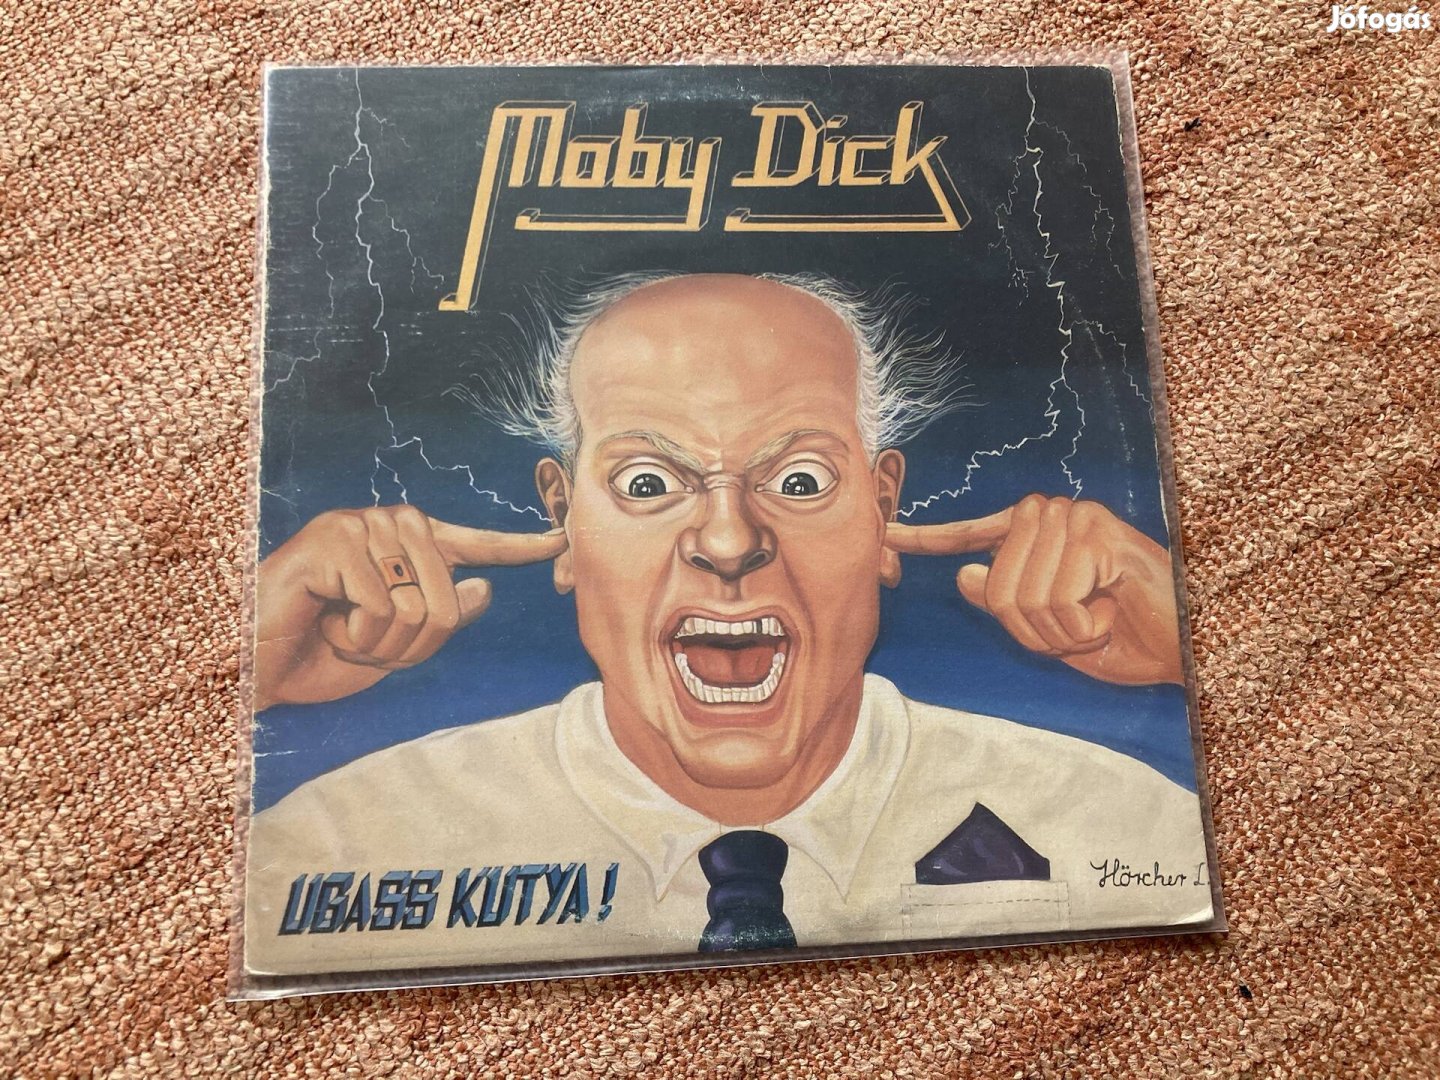 Moby Dick Ugass kutya LP